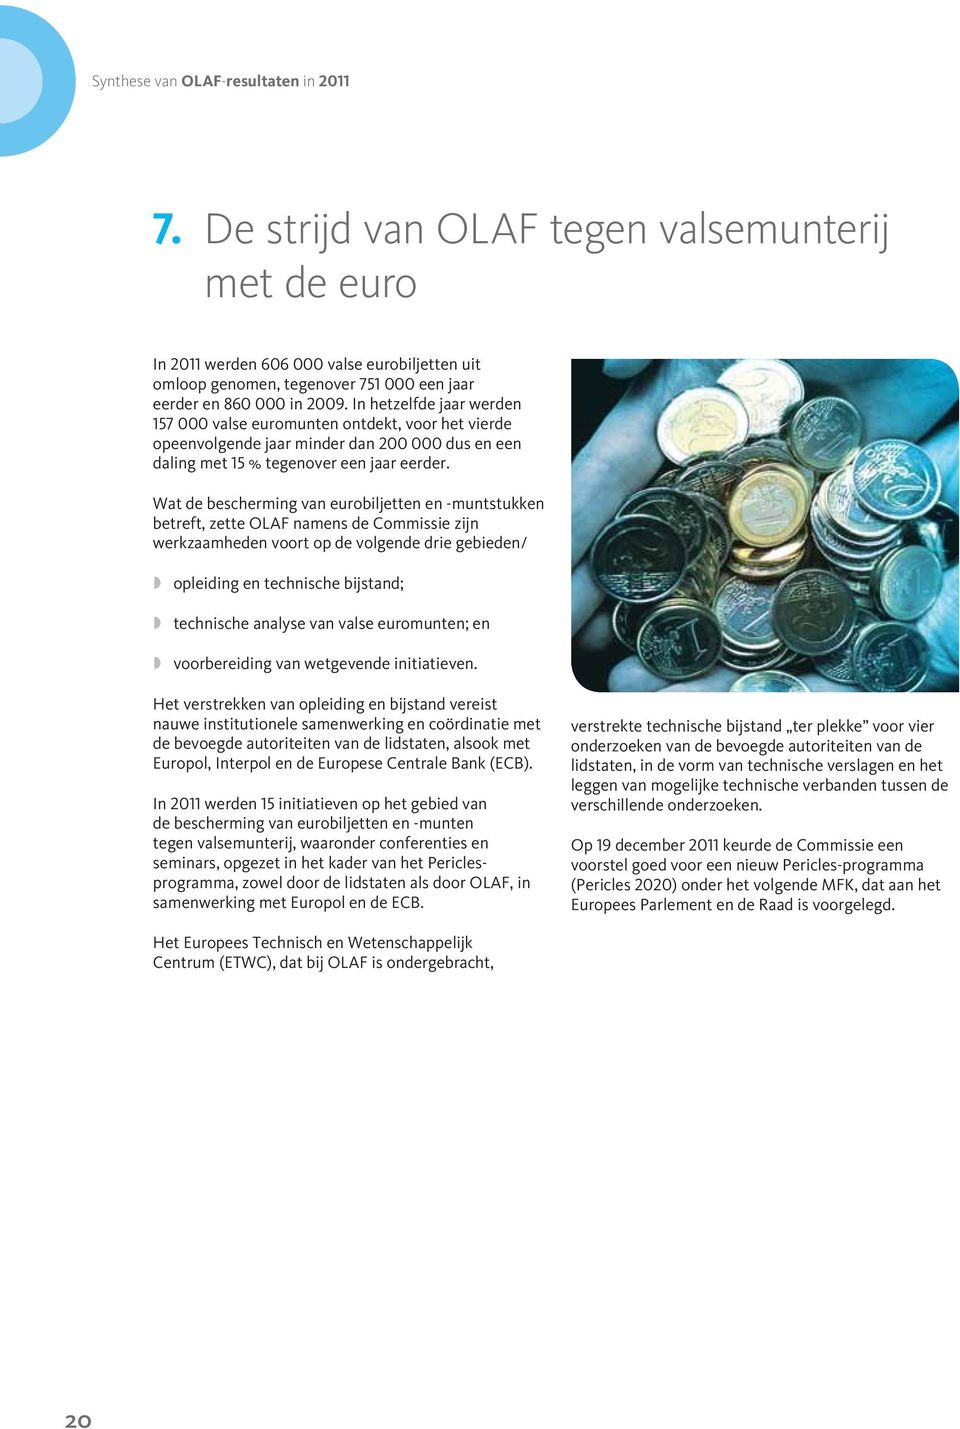 In hetzelfde jaar werden 157 000 valse euromunten ontdekt, voor het vierde opeenvolgende jaar minder dan 200 000 dus en een daling met 15 % tegenover een jaar eerder.